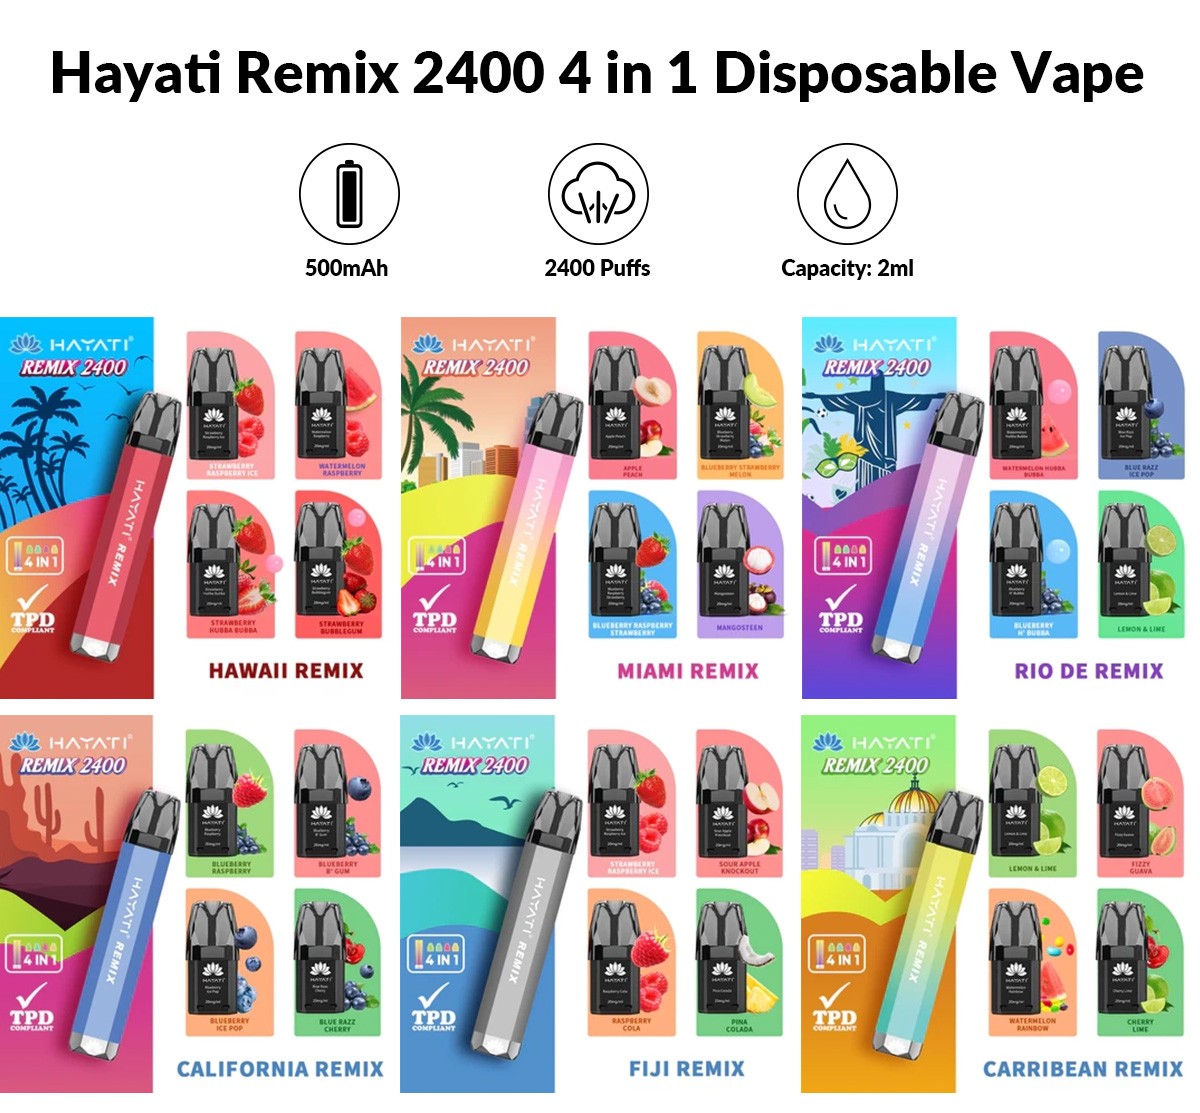 Hayati Remix 2400 4 in 1